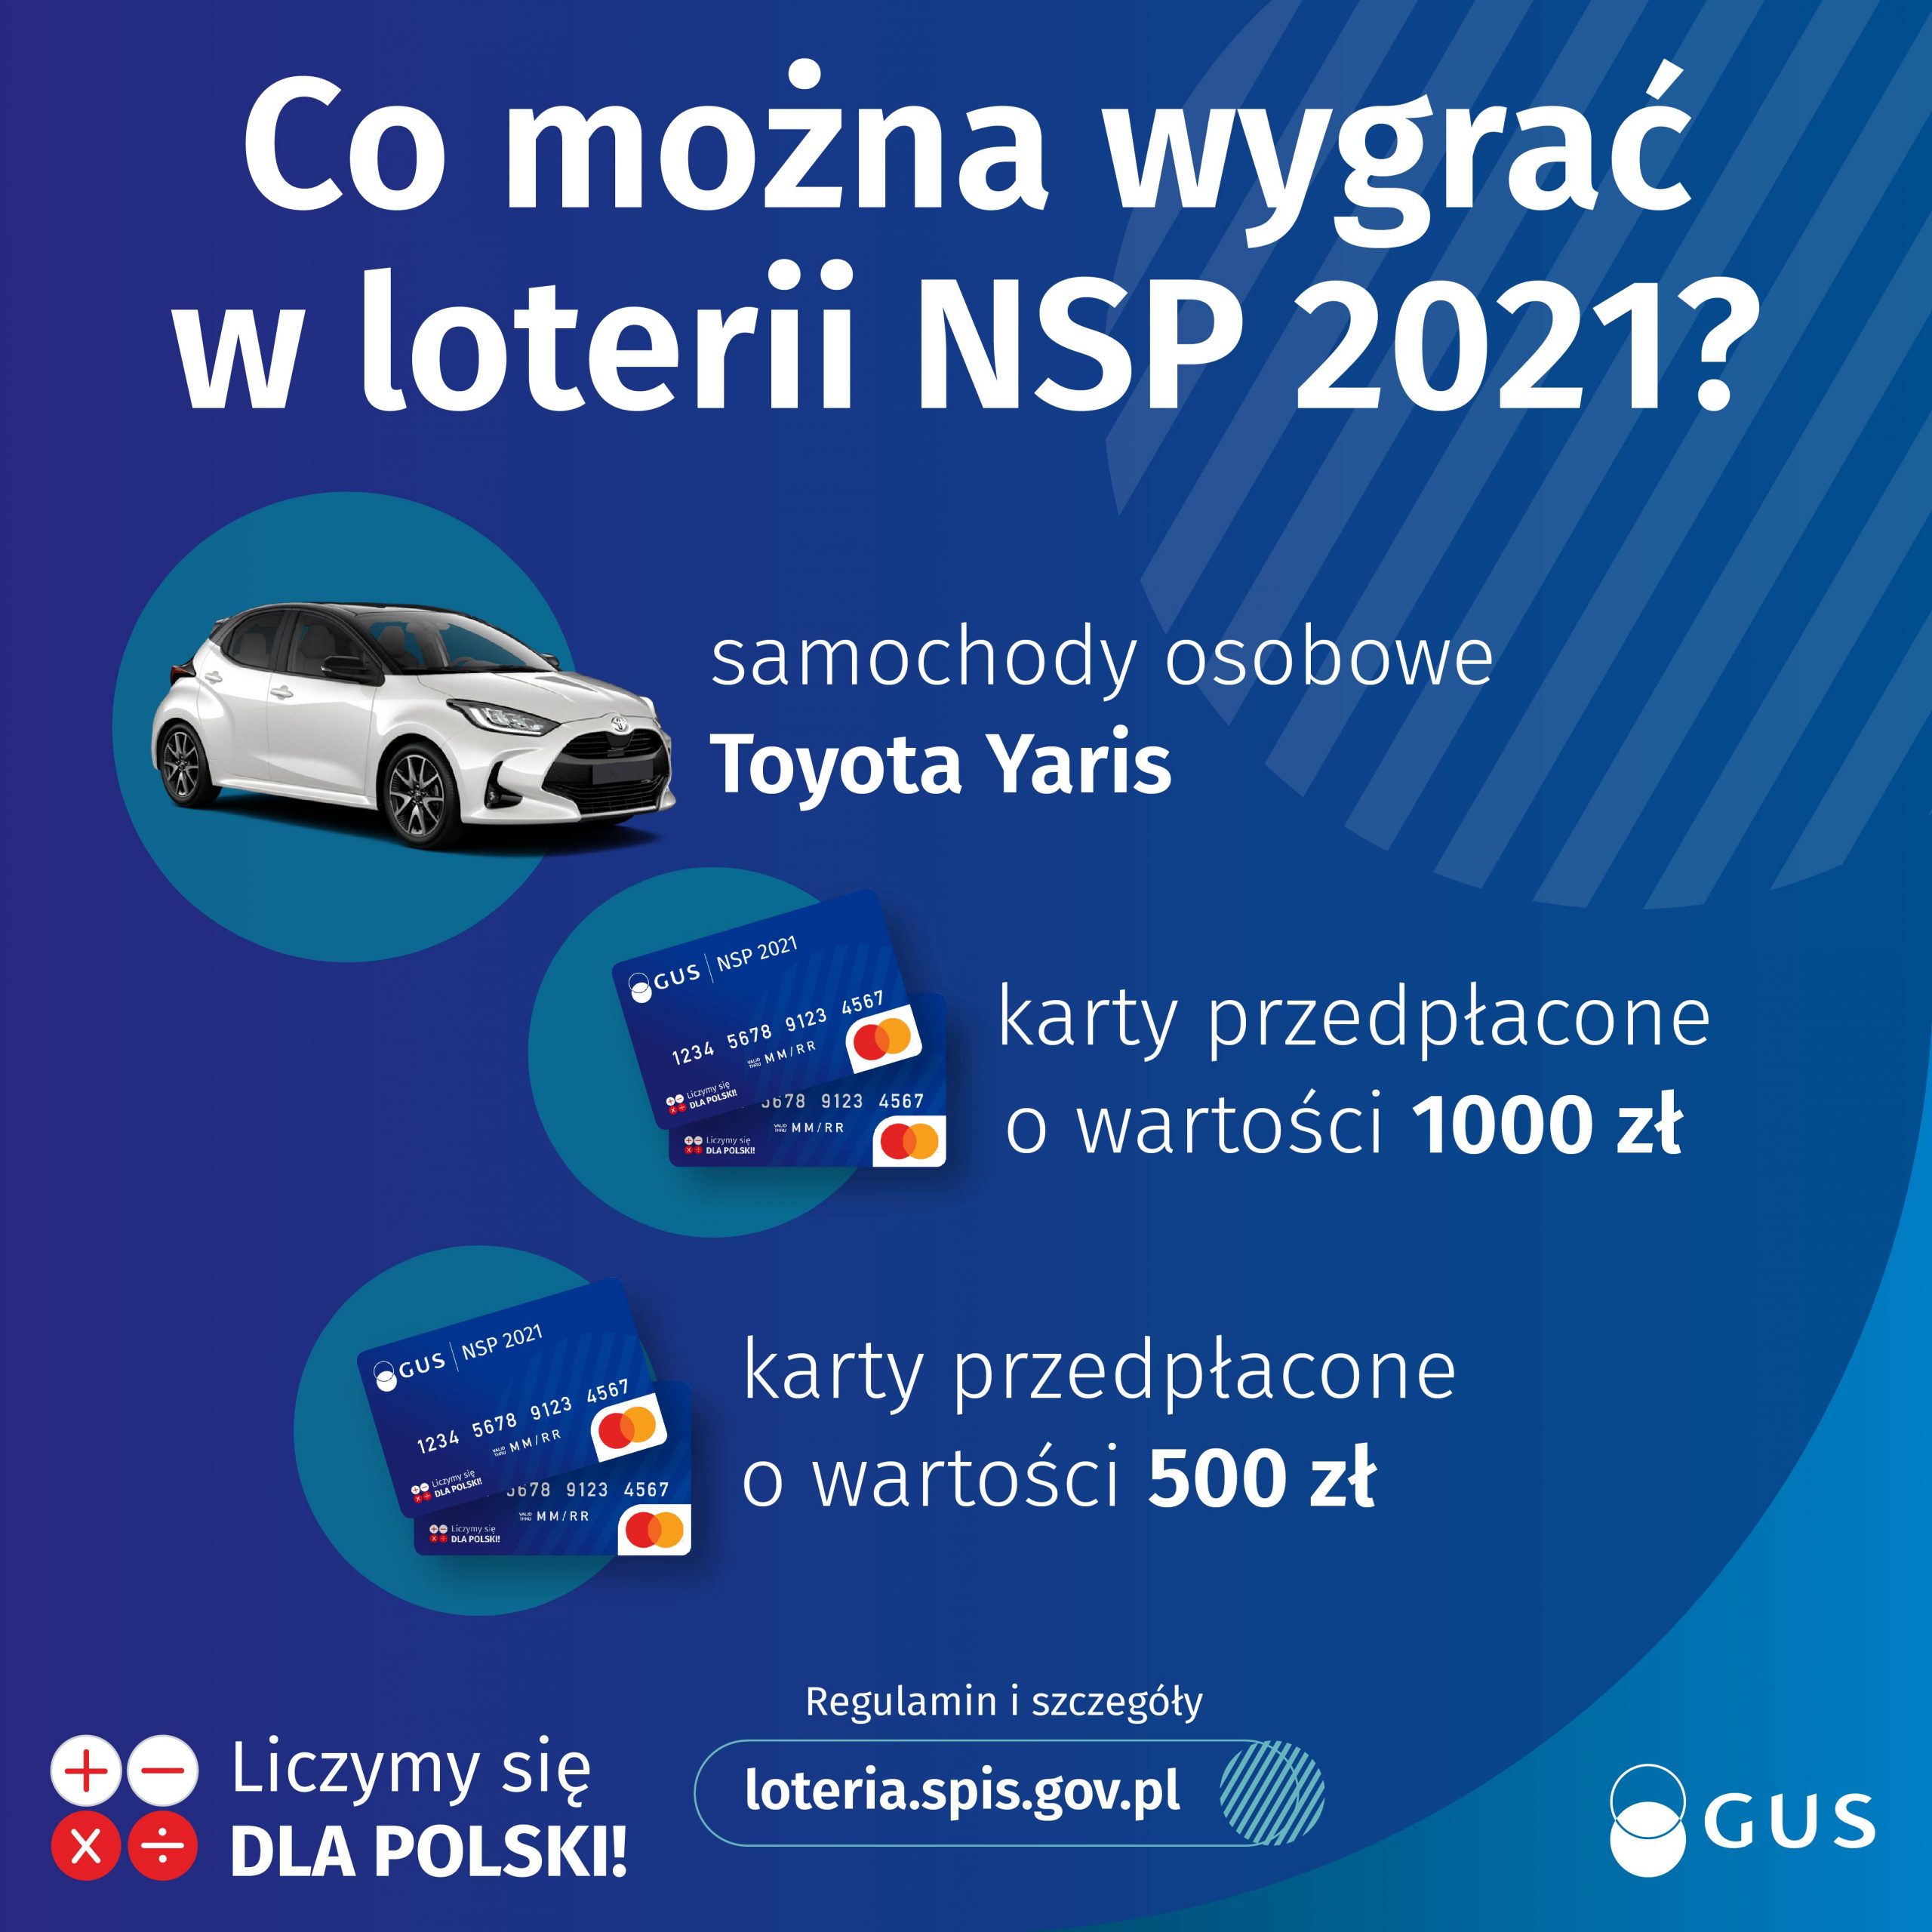 co można wygrac w loterii NSP? Toyota Yaris, karty przedpłacone 1000 i 500 zł